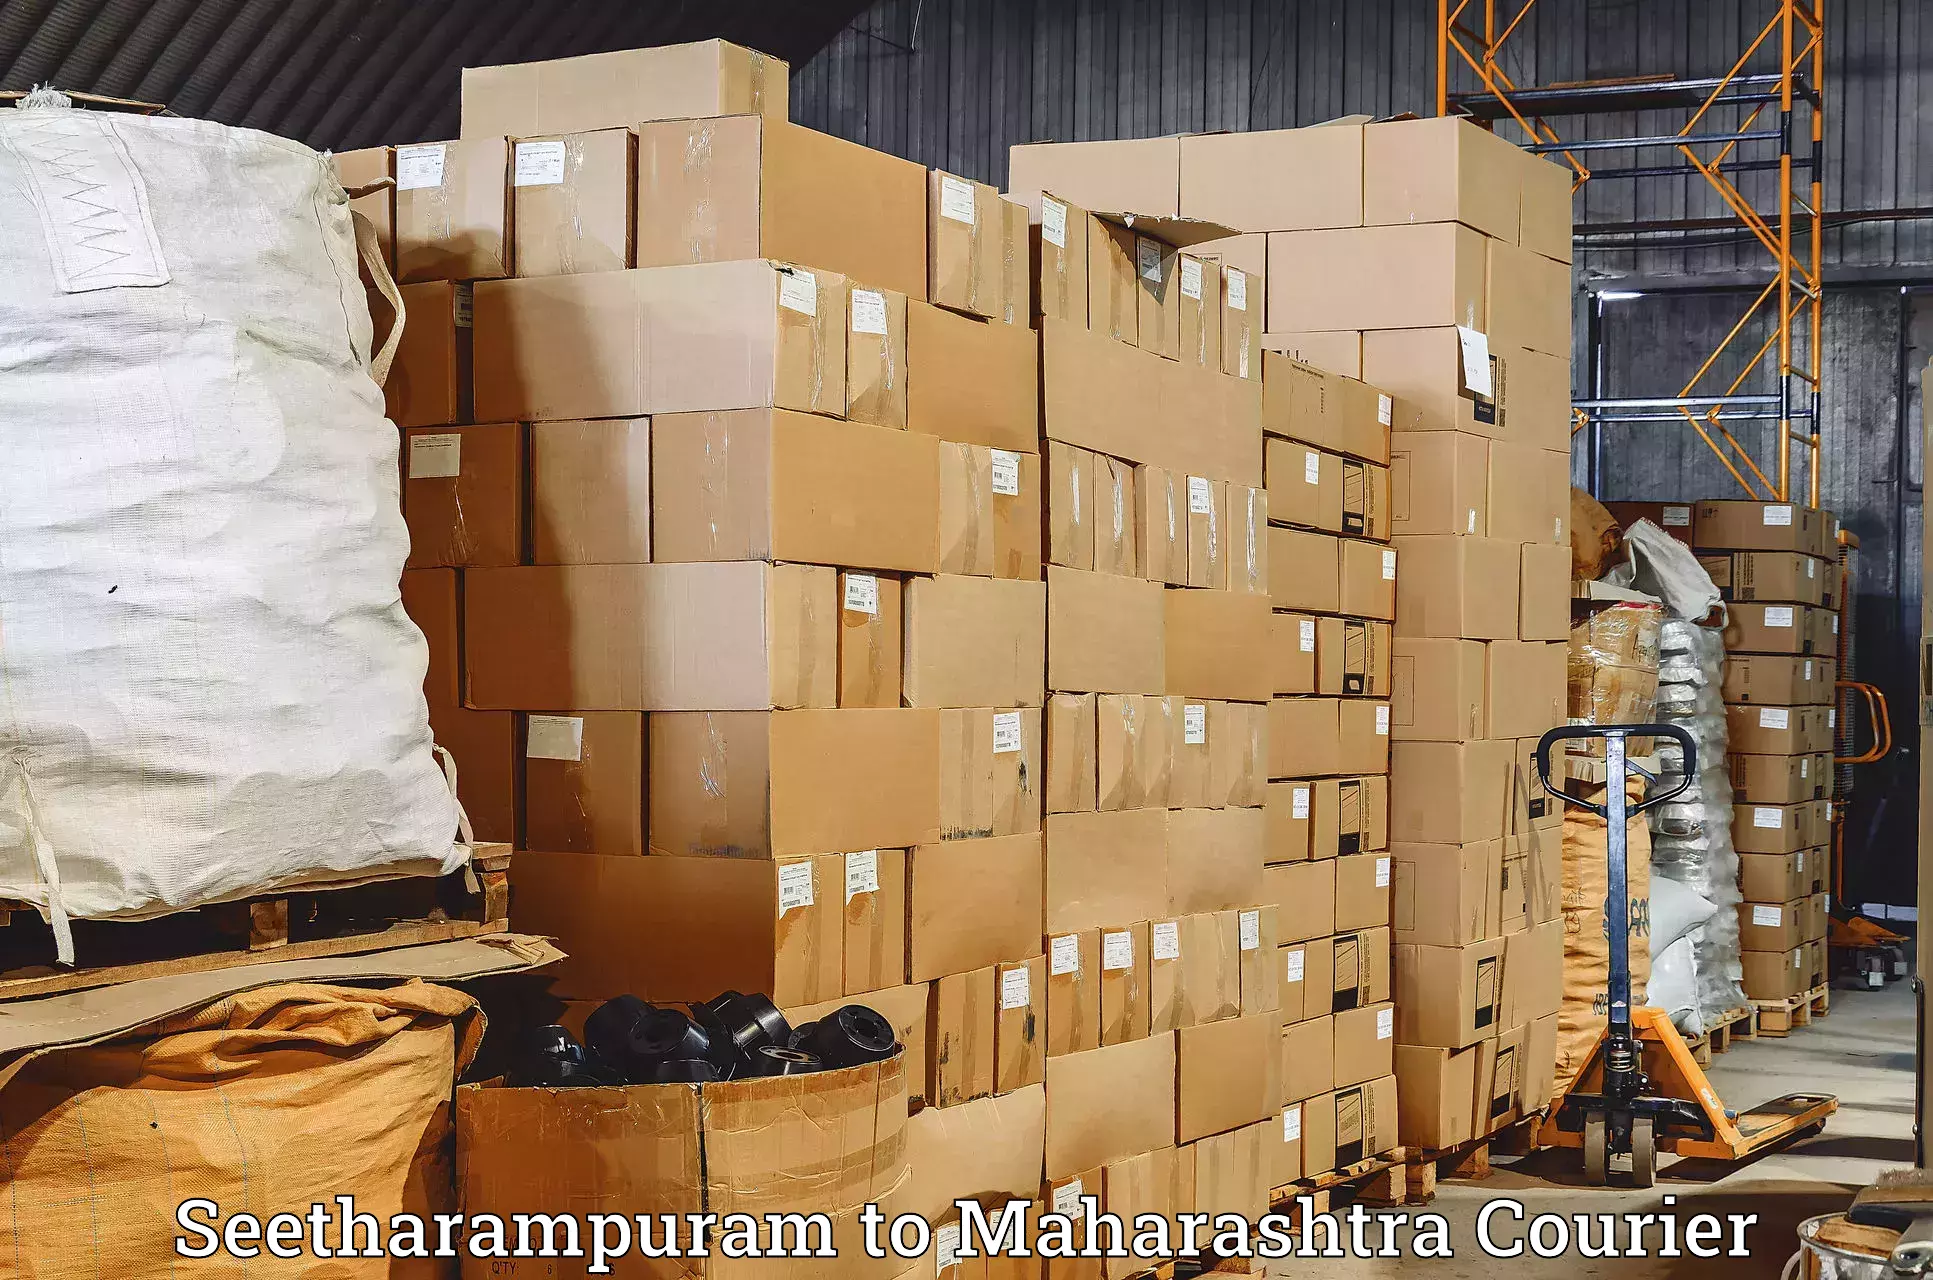 Courier insurance Seetharampuram to Maharashtra